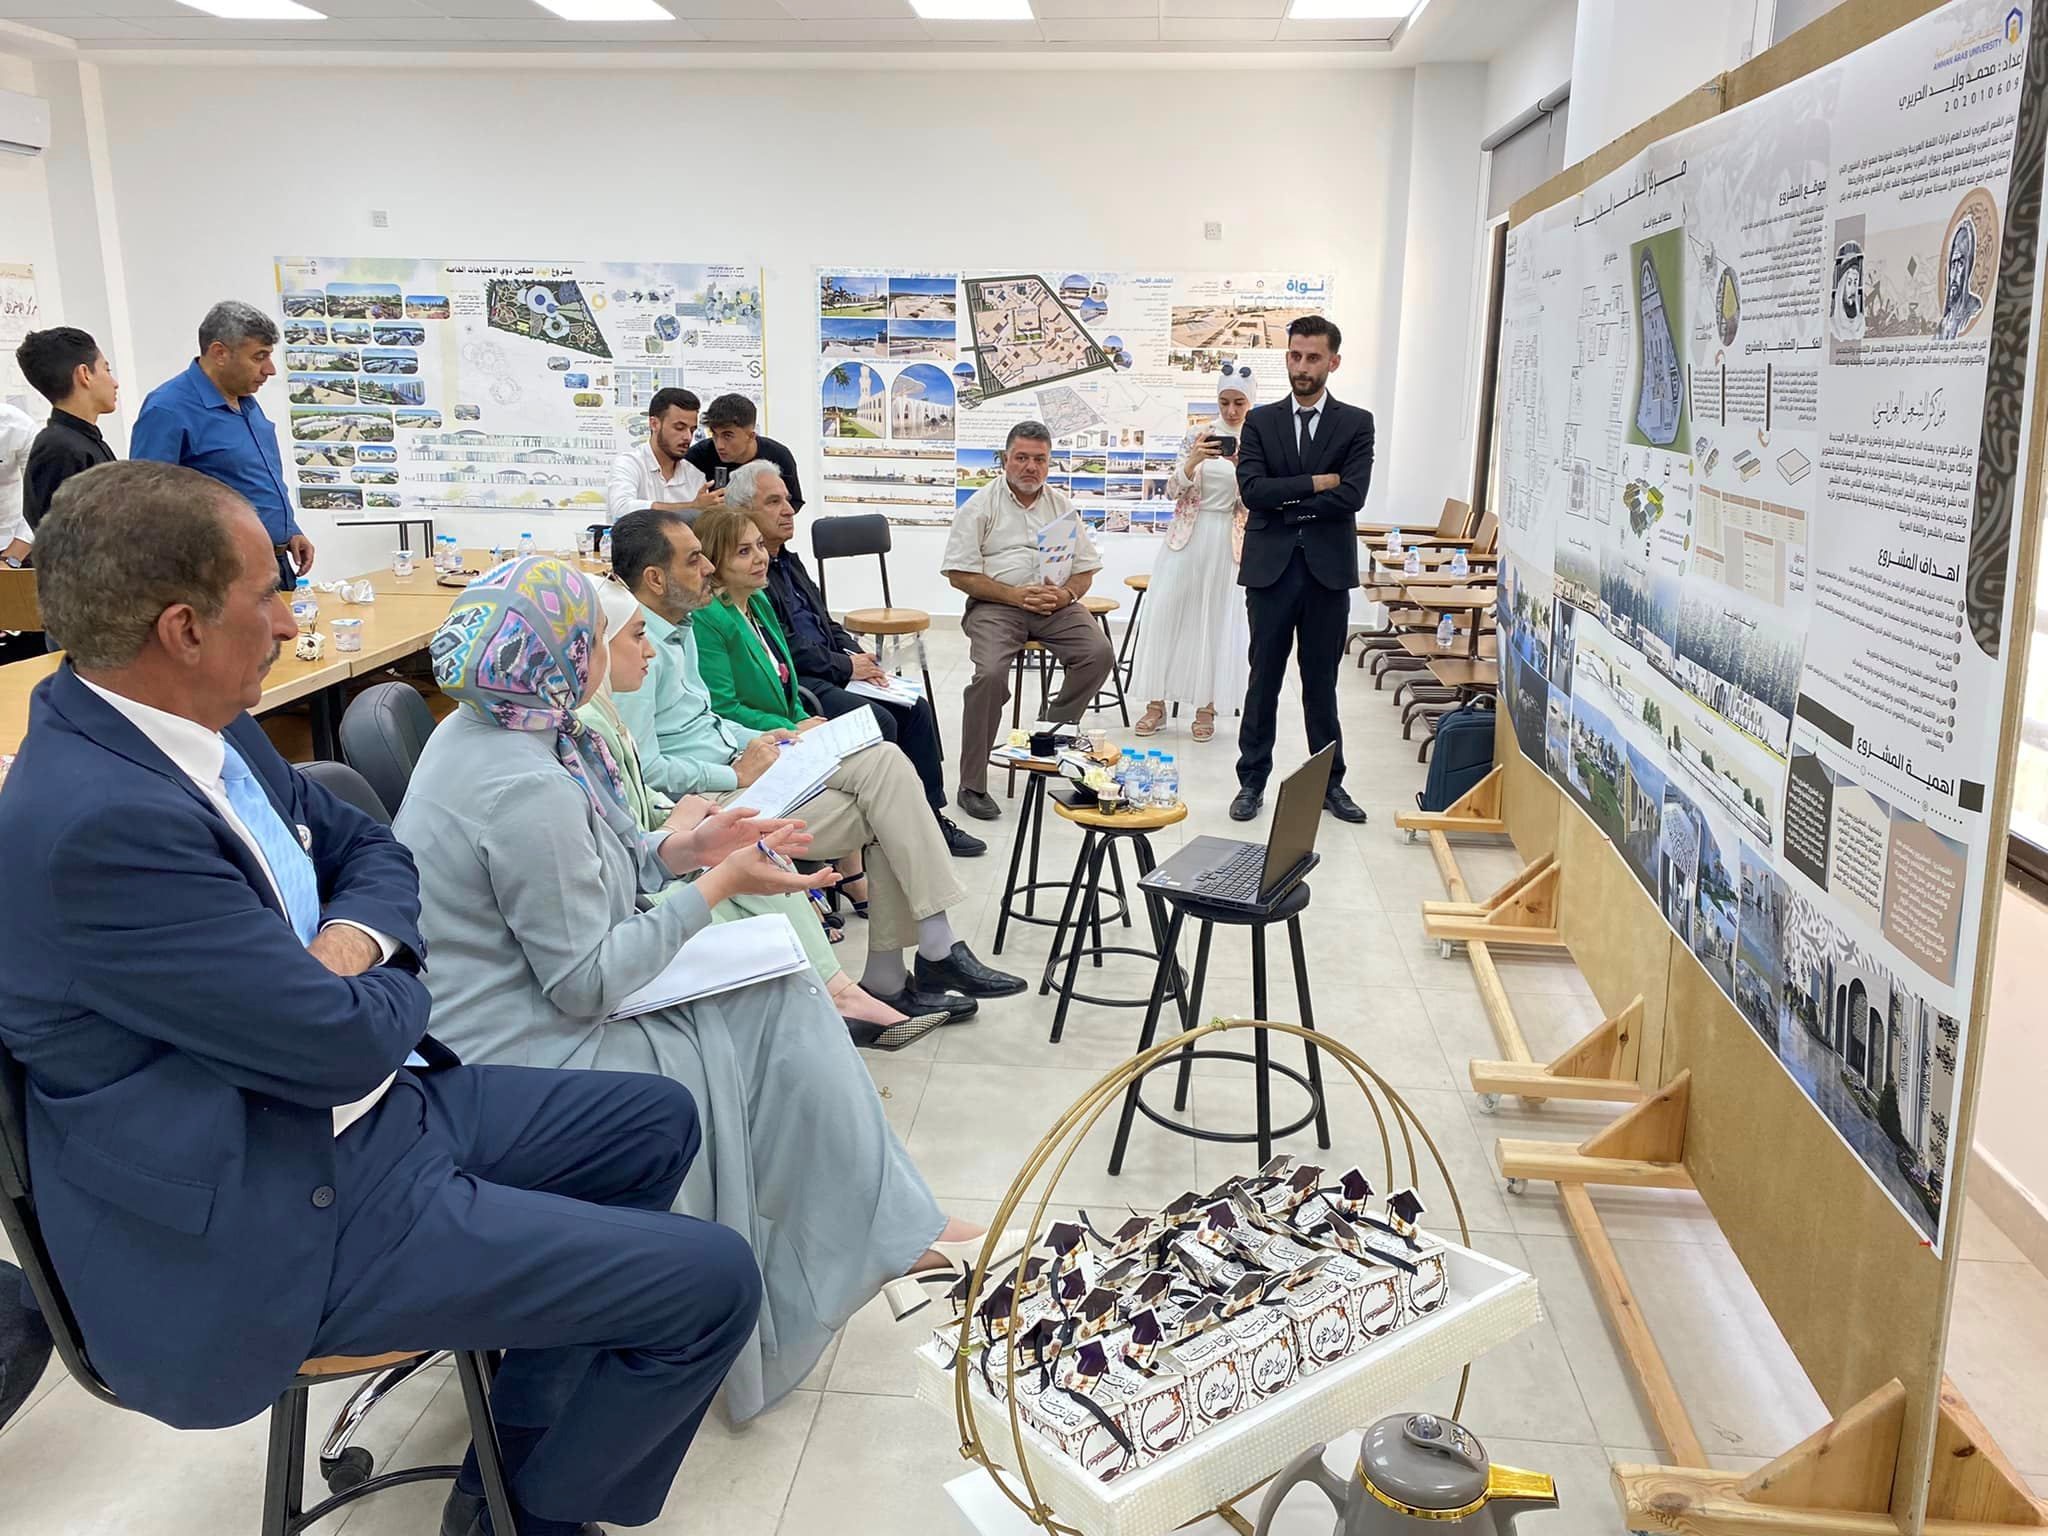 مشاريع تخرج بأفكار ريادية لطلبة هندسة العمارة في "عمان العربية"6